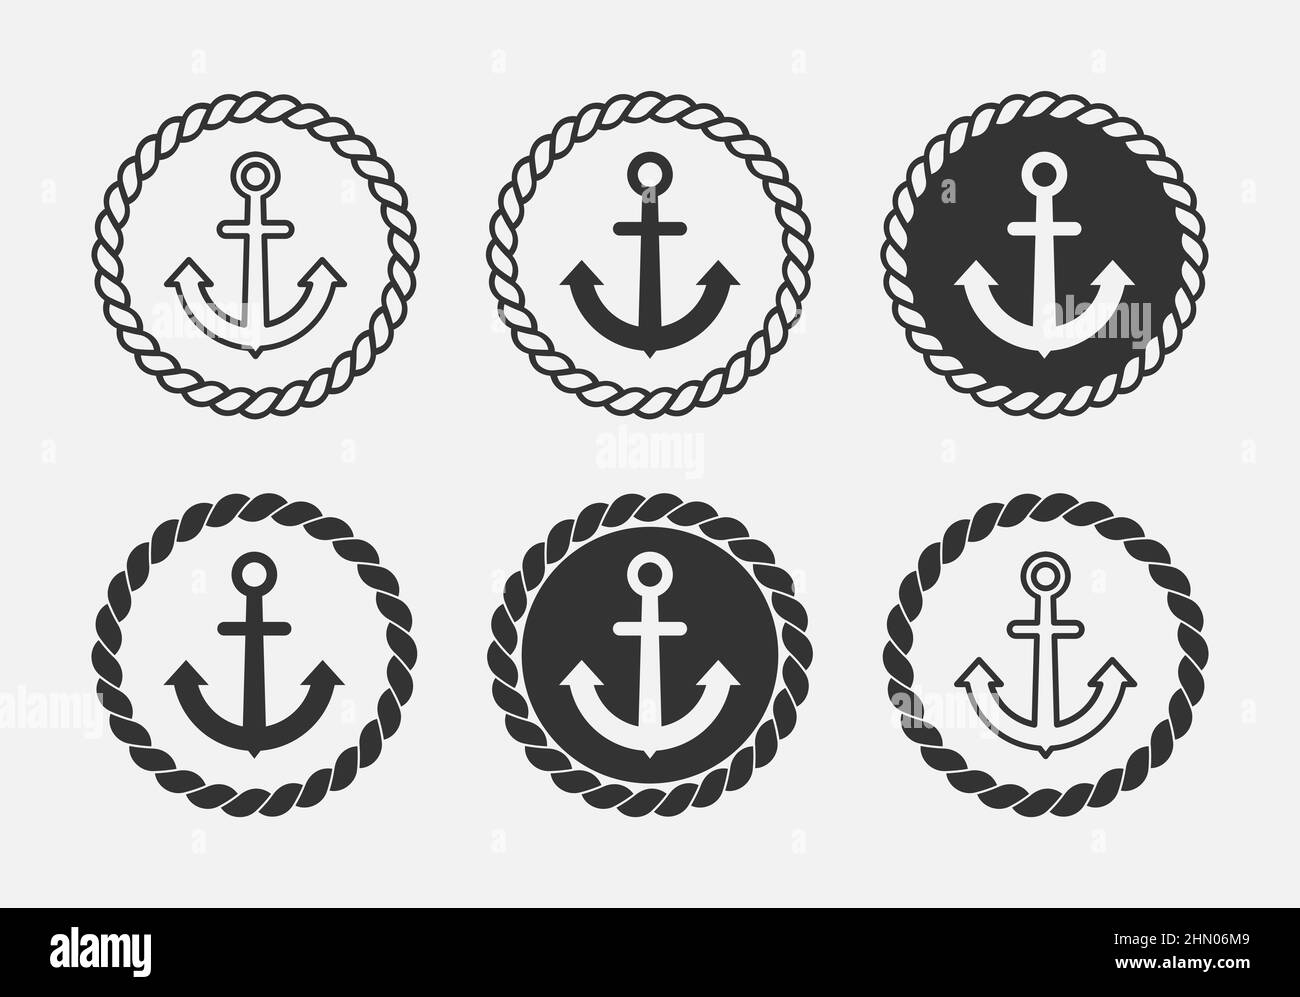 Anker- und Seilkreis-Logosatz. Symbolgruppe für nautisches Thema. Segeln und Meer Vintage Design-Elemente. Marine-Emblem oder -Abzeichen. Rundseil mit Anker Stock Vektor